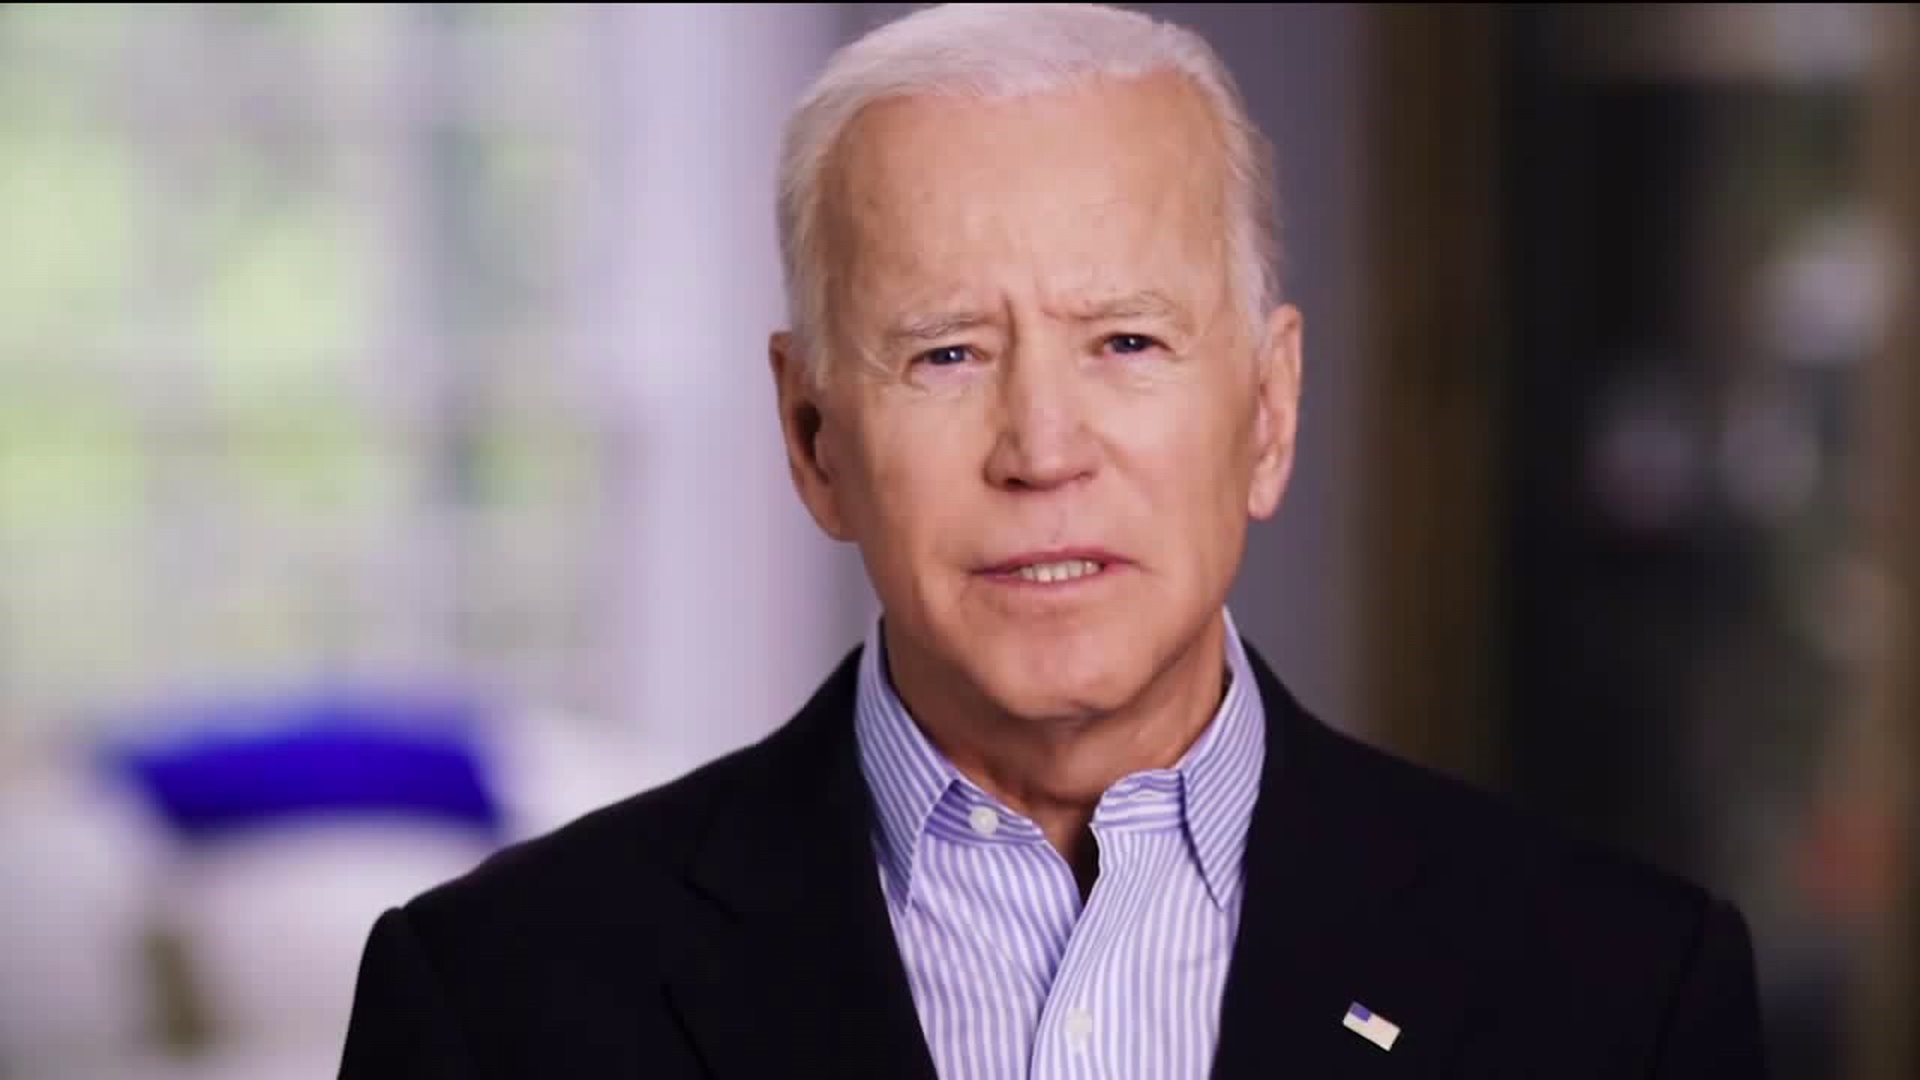 Joe Biden Officially Announces 2020 Presidential Run